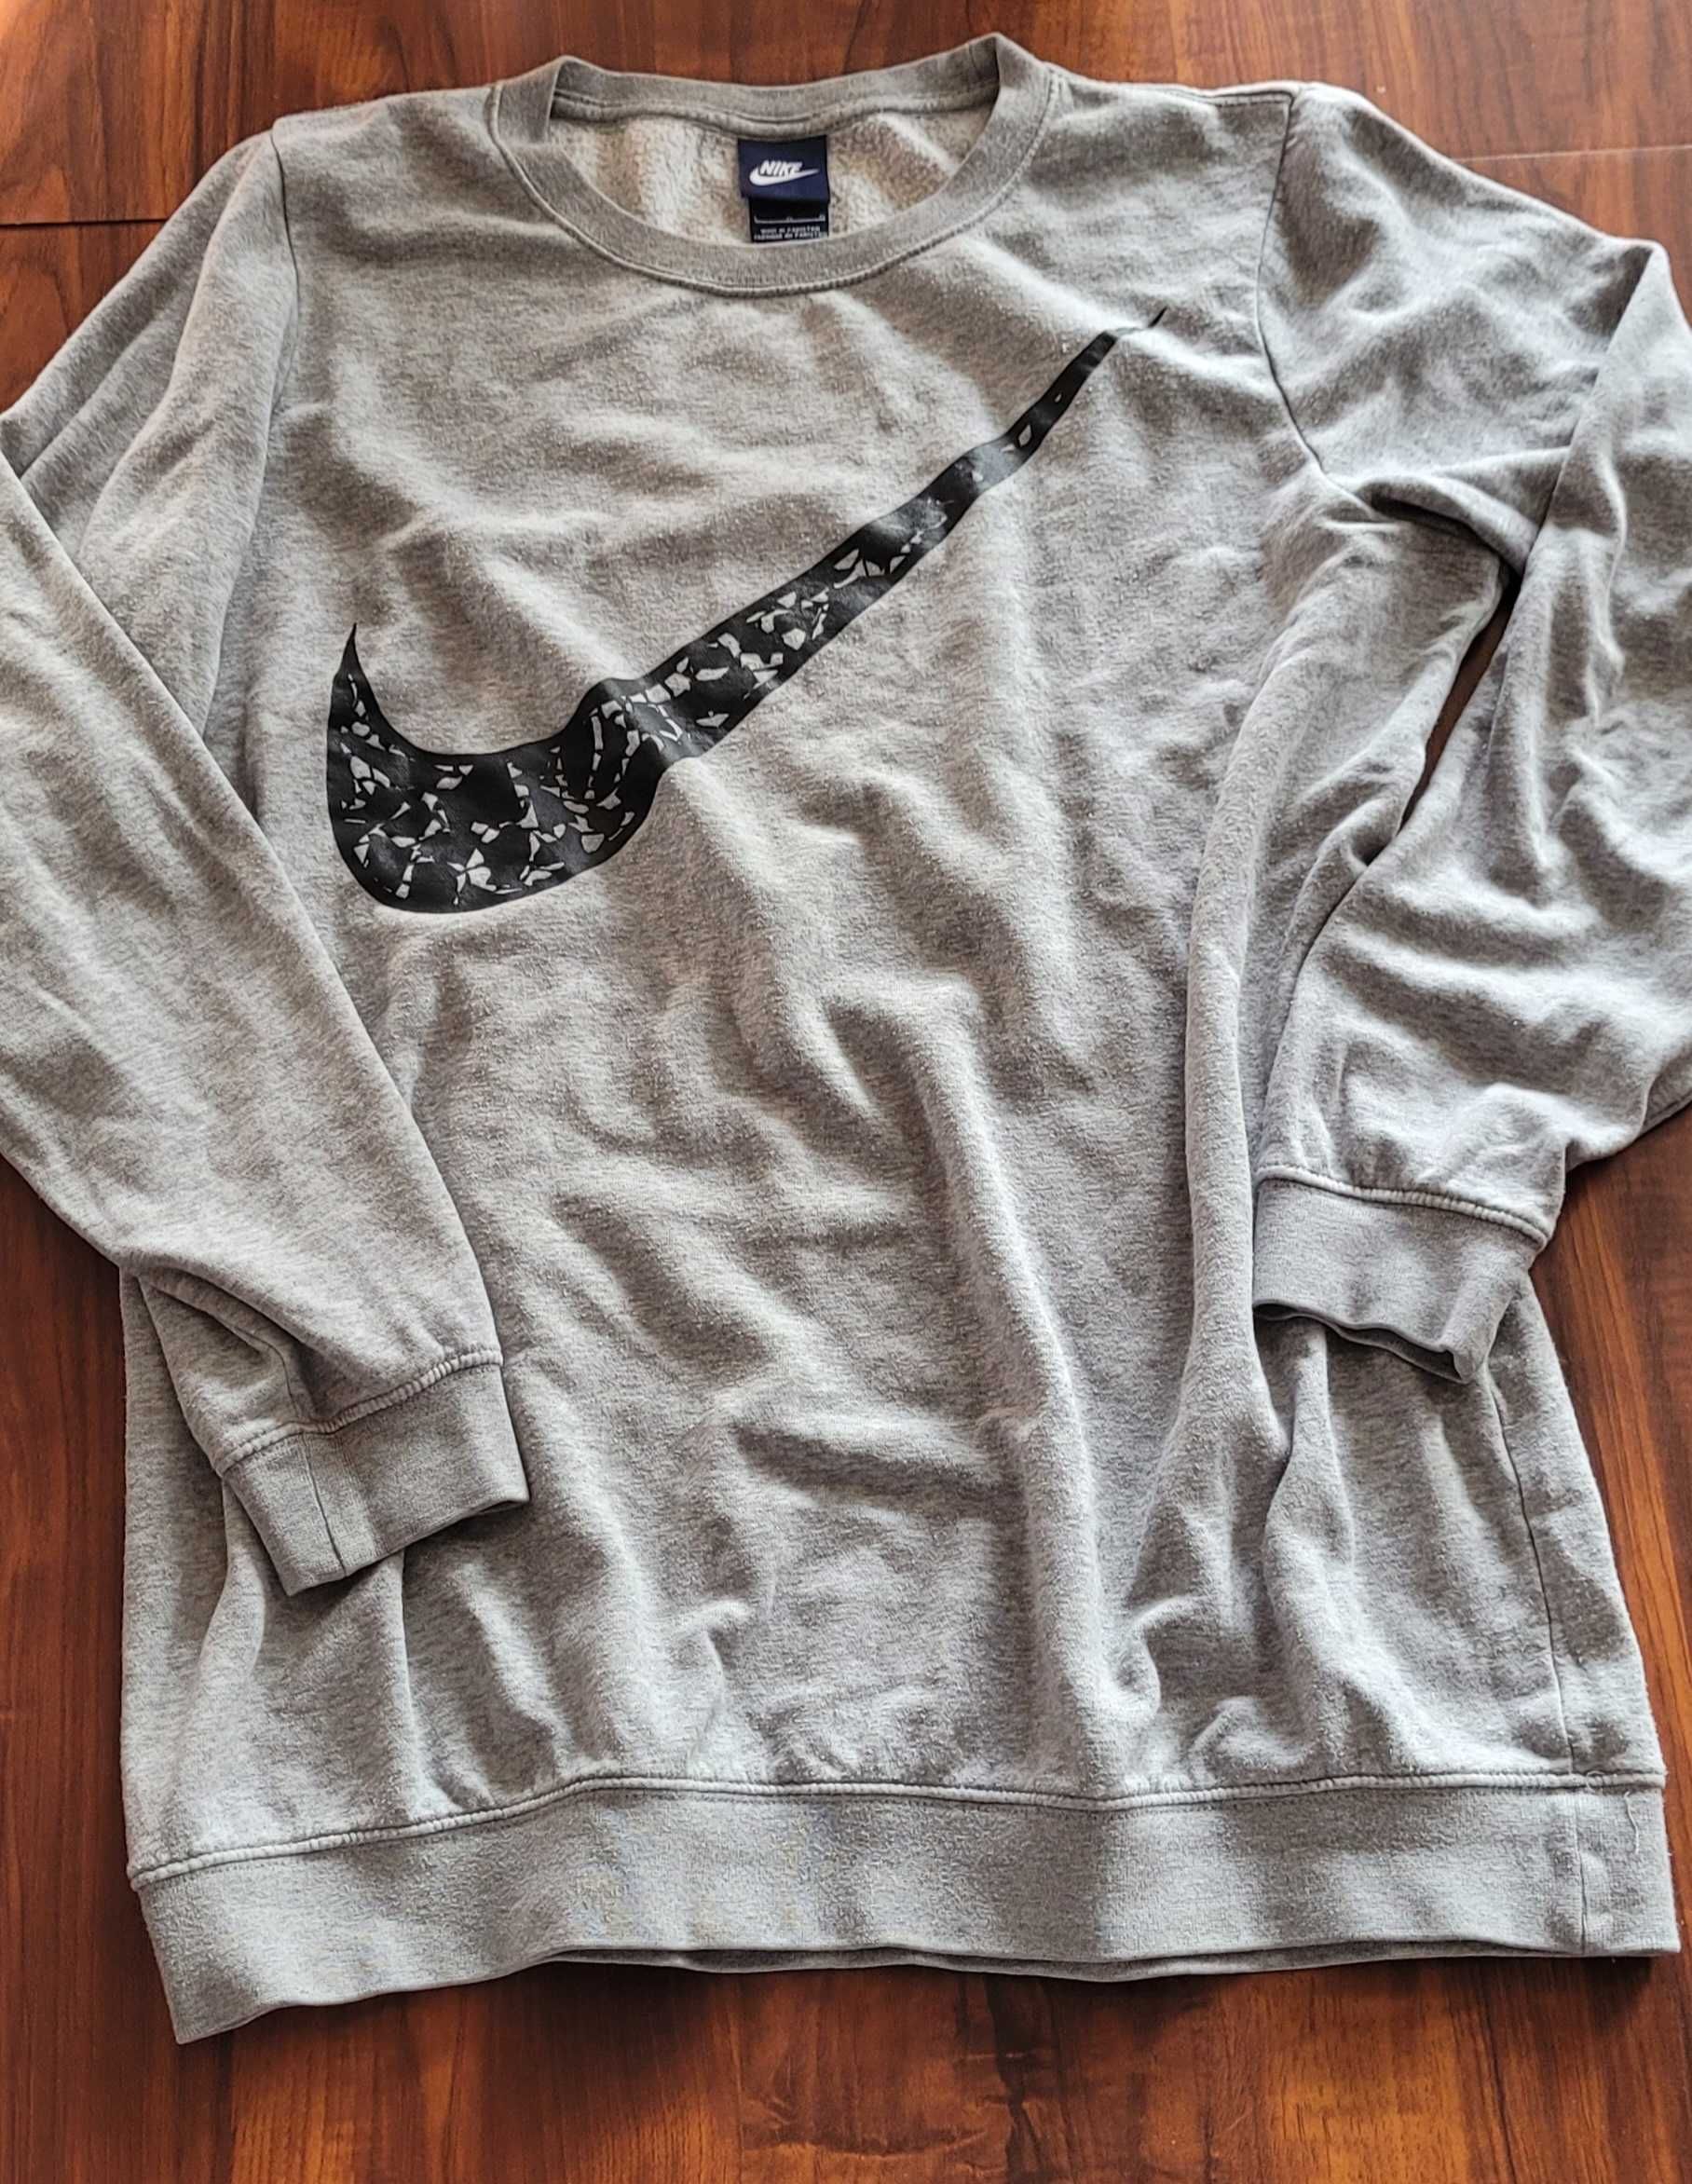 Bluza Nike szara rozmiar L /XL